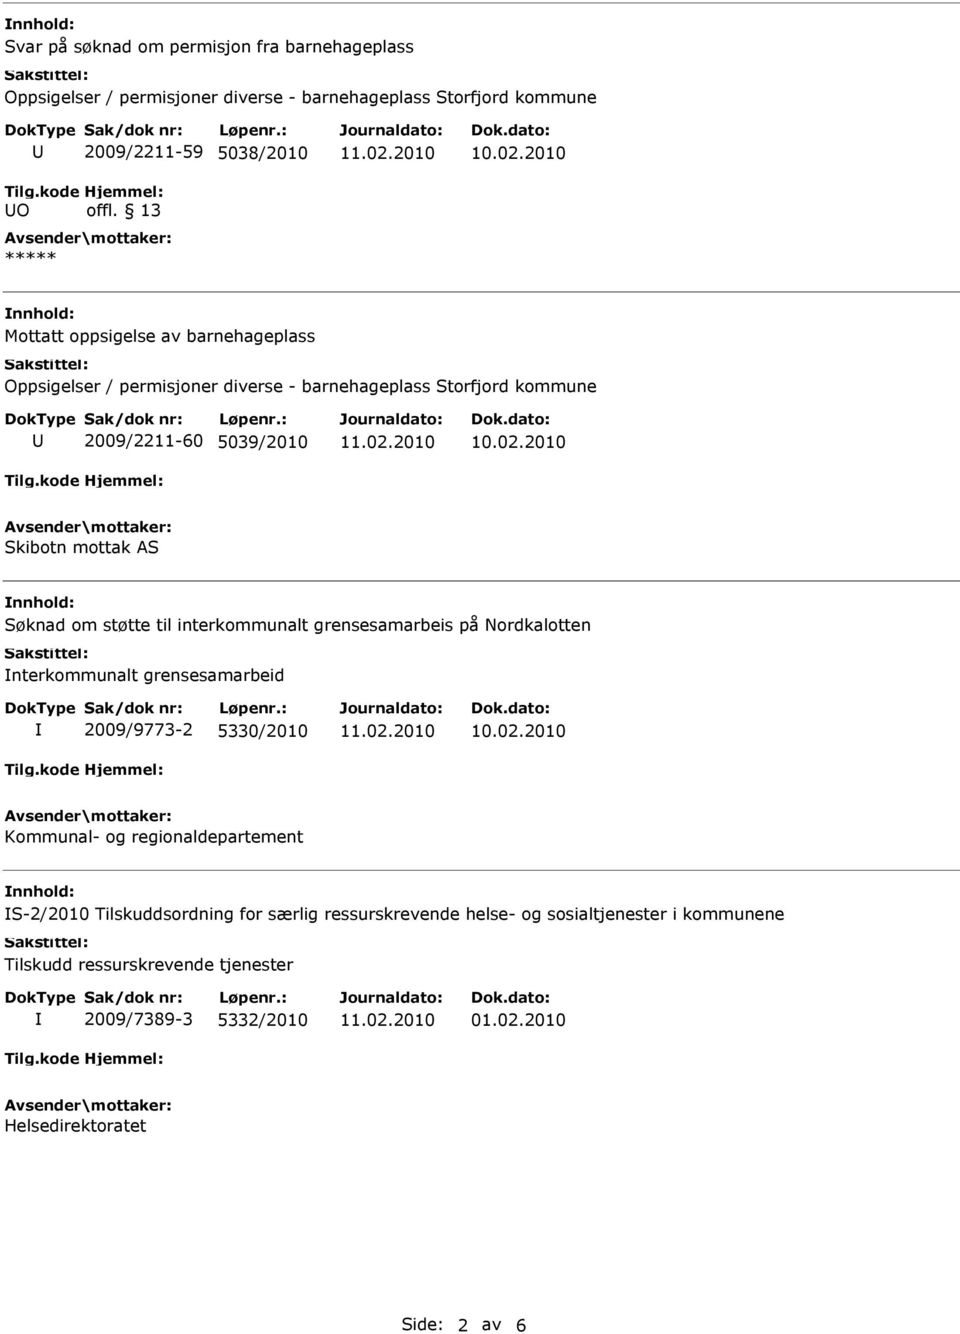 grensesamarbeis på Nordkalotten nterkommunalt grensesamarbeid 2009/9773-2 5330/2010 Kommunal- og regionaldepartement S-2/2010